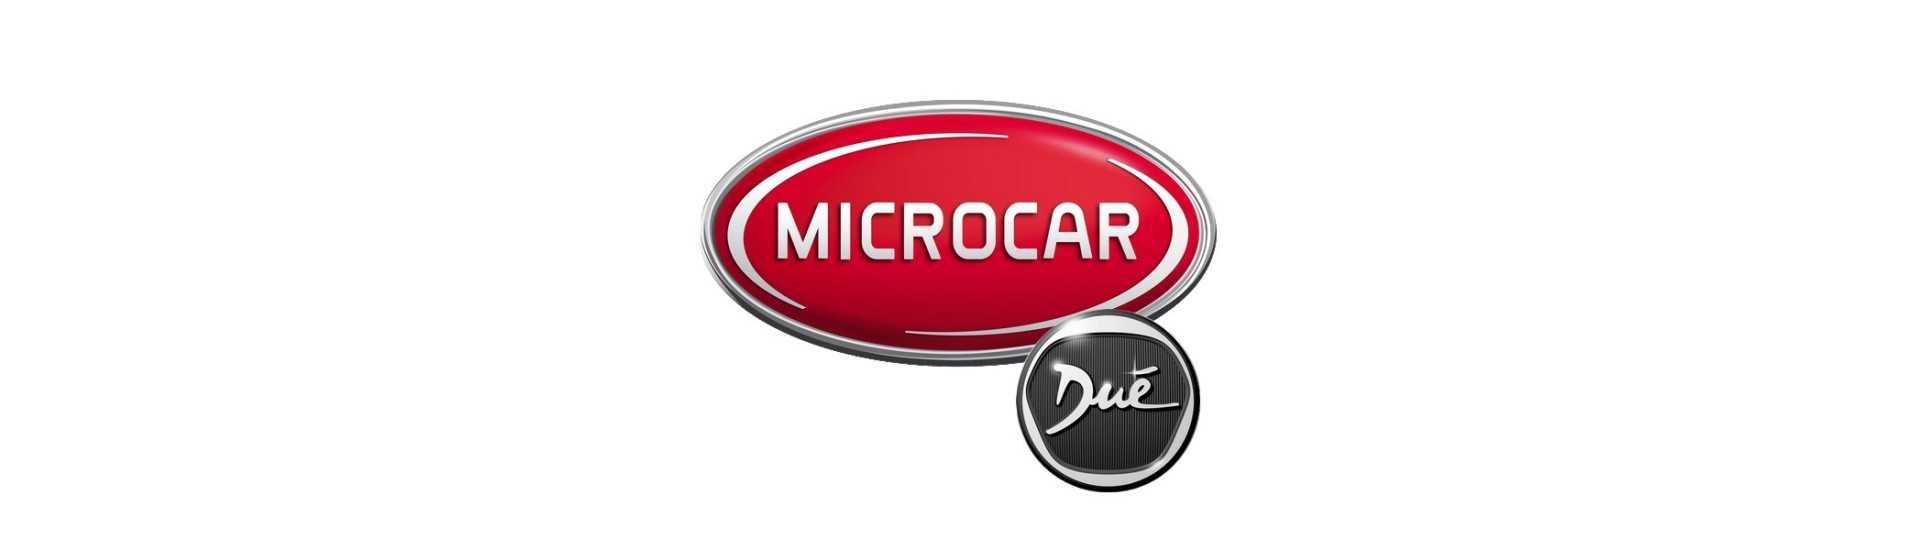 Mejor precio guante caja para coche sin permiso Microcar Dué